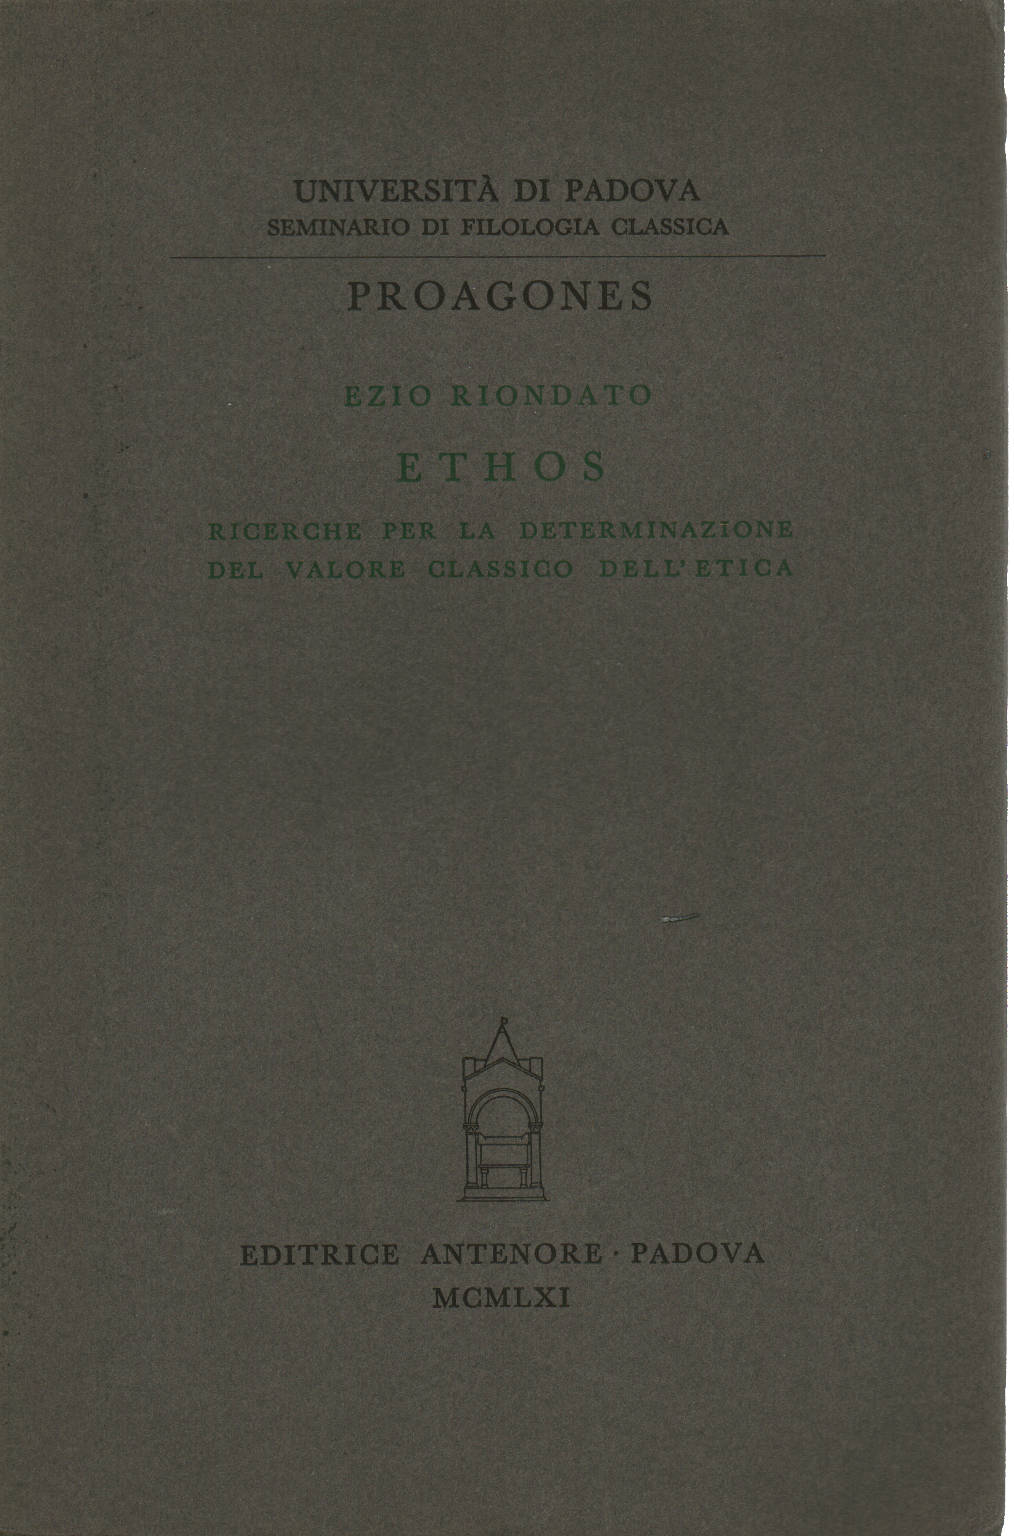 Ethos, Ezio Riondato